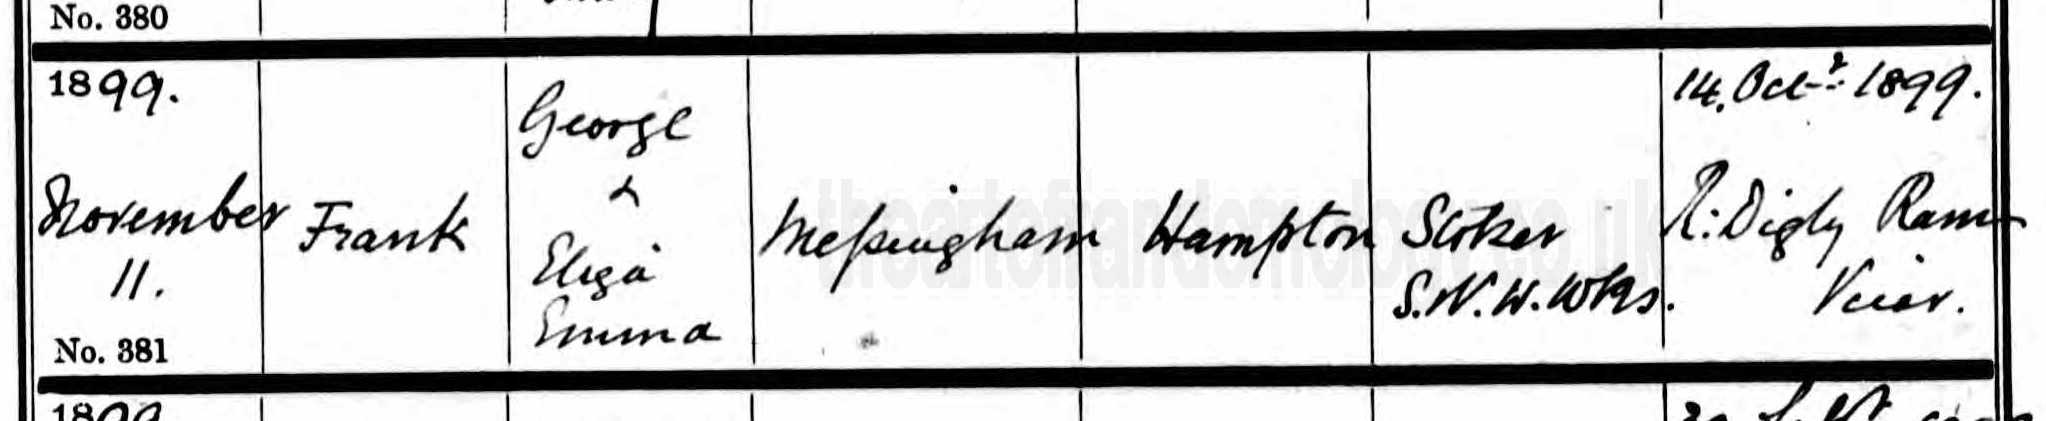 Frank Messingham baptism 1899